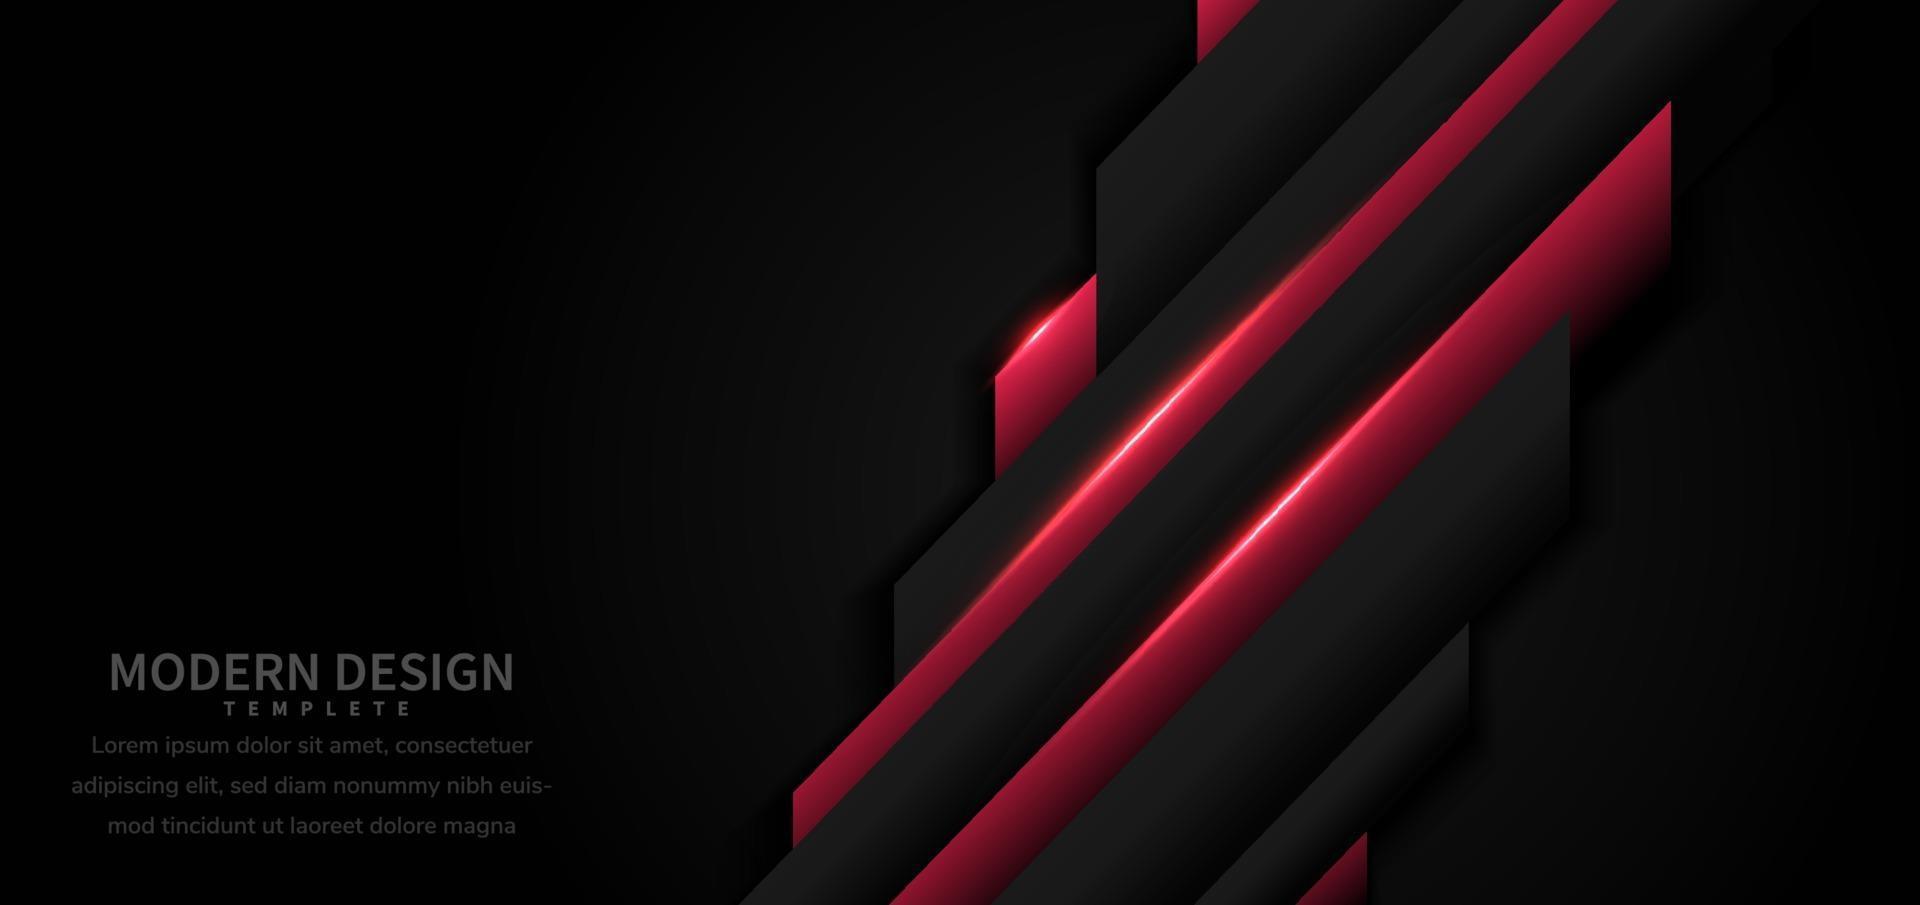 abstracte sjabloon geometrische rode en zwarte overlapping met stijl van de rood licht moderne technologie op zwarte achtergrond. vector